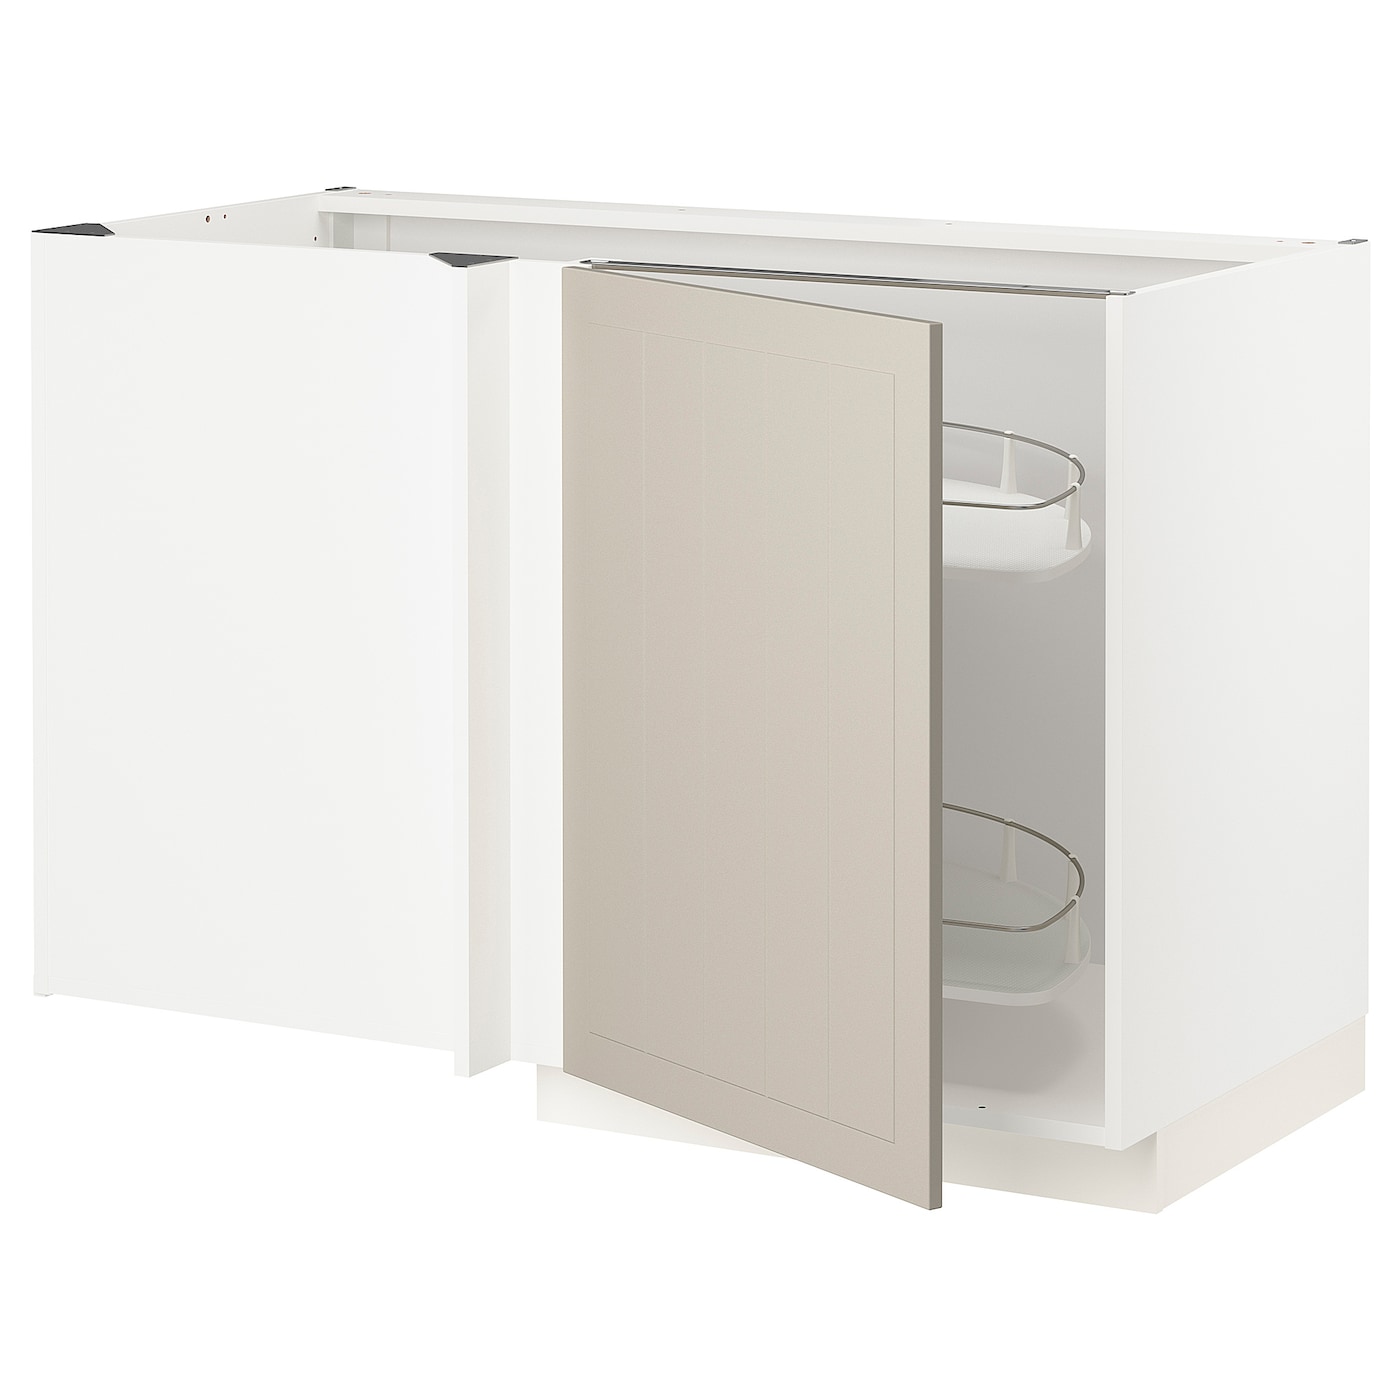 Напольный кухонный шкаф  - IKEA METOD MAXIMERA, 88x67,5x127,5см, белый/бежевый, МЕТОД МАКСИМЕРА ИКЕА